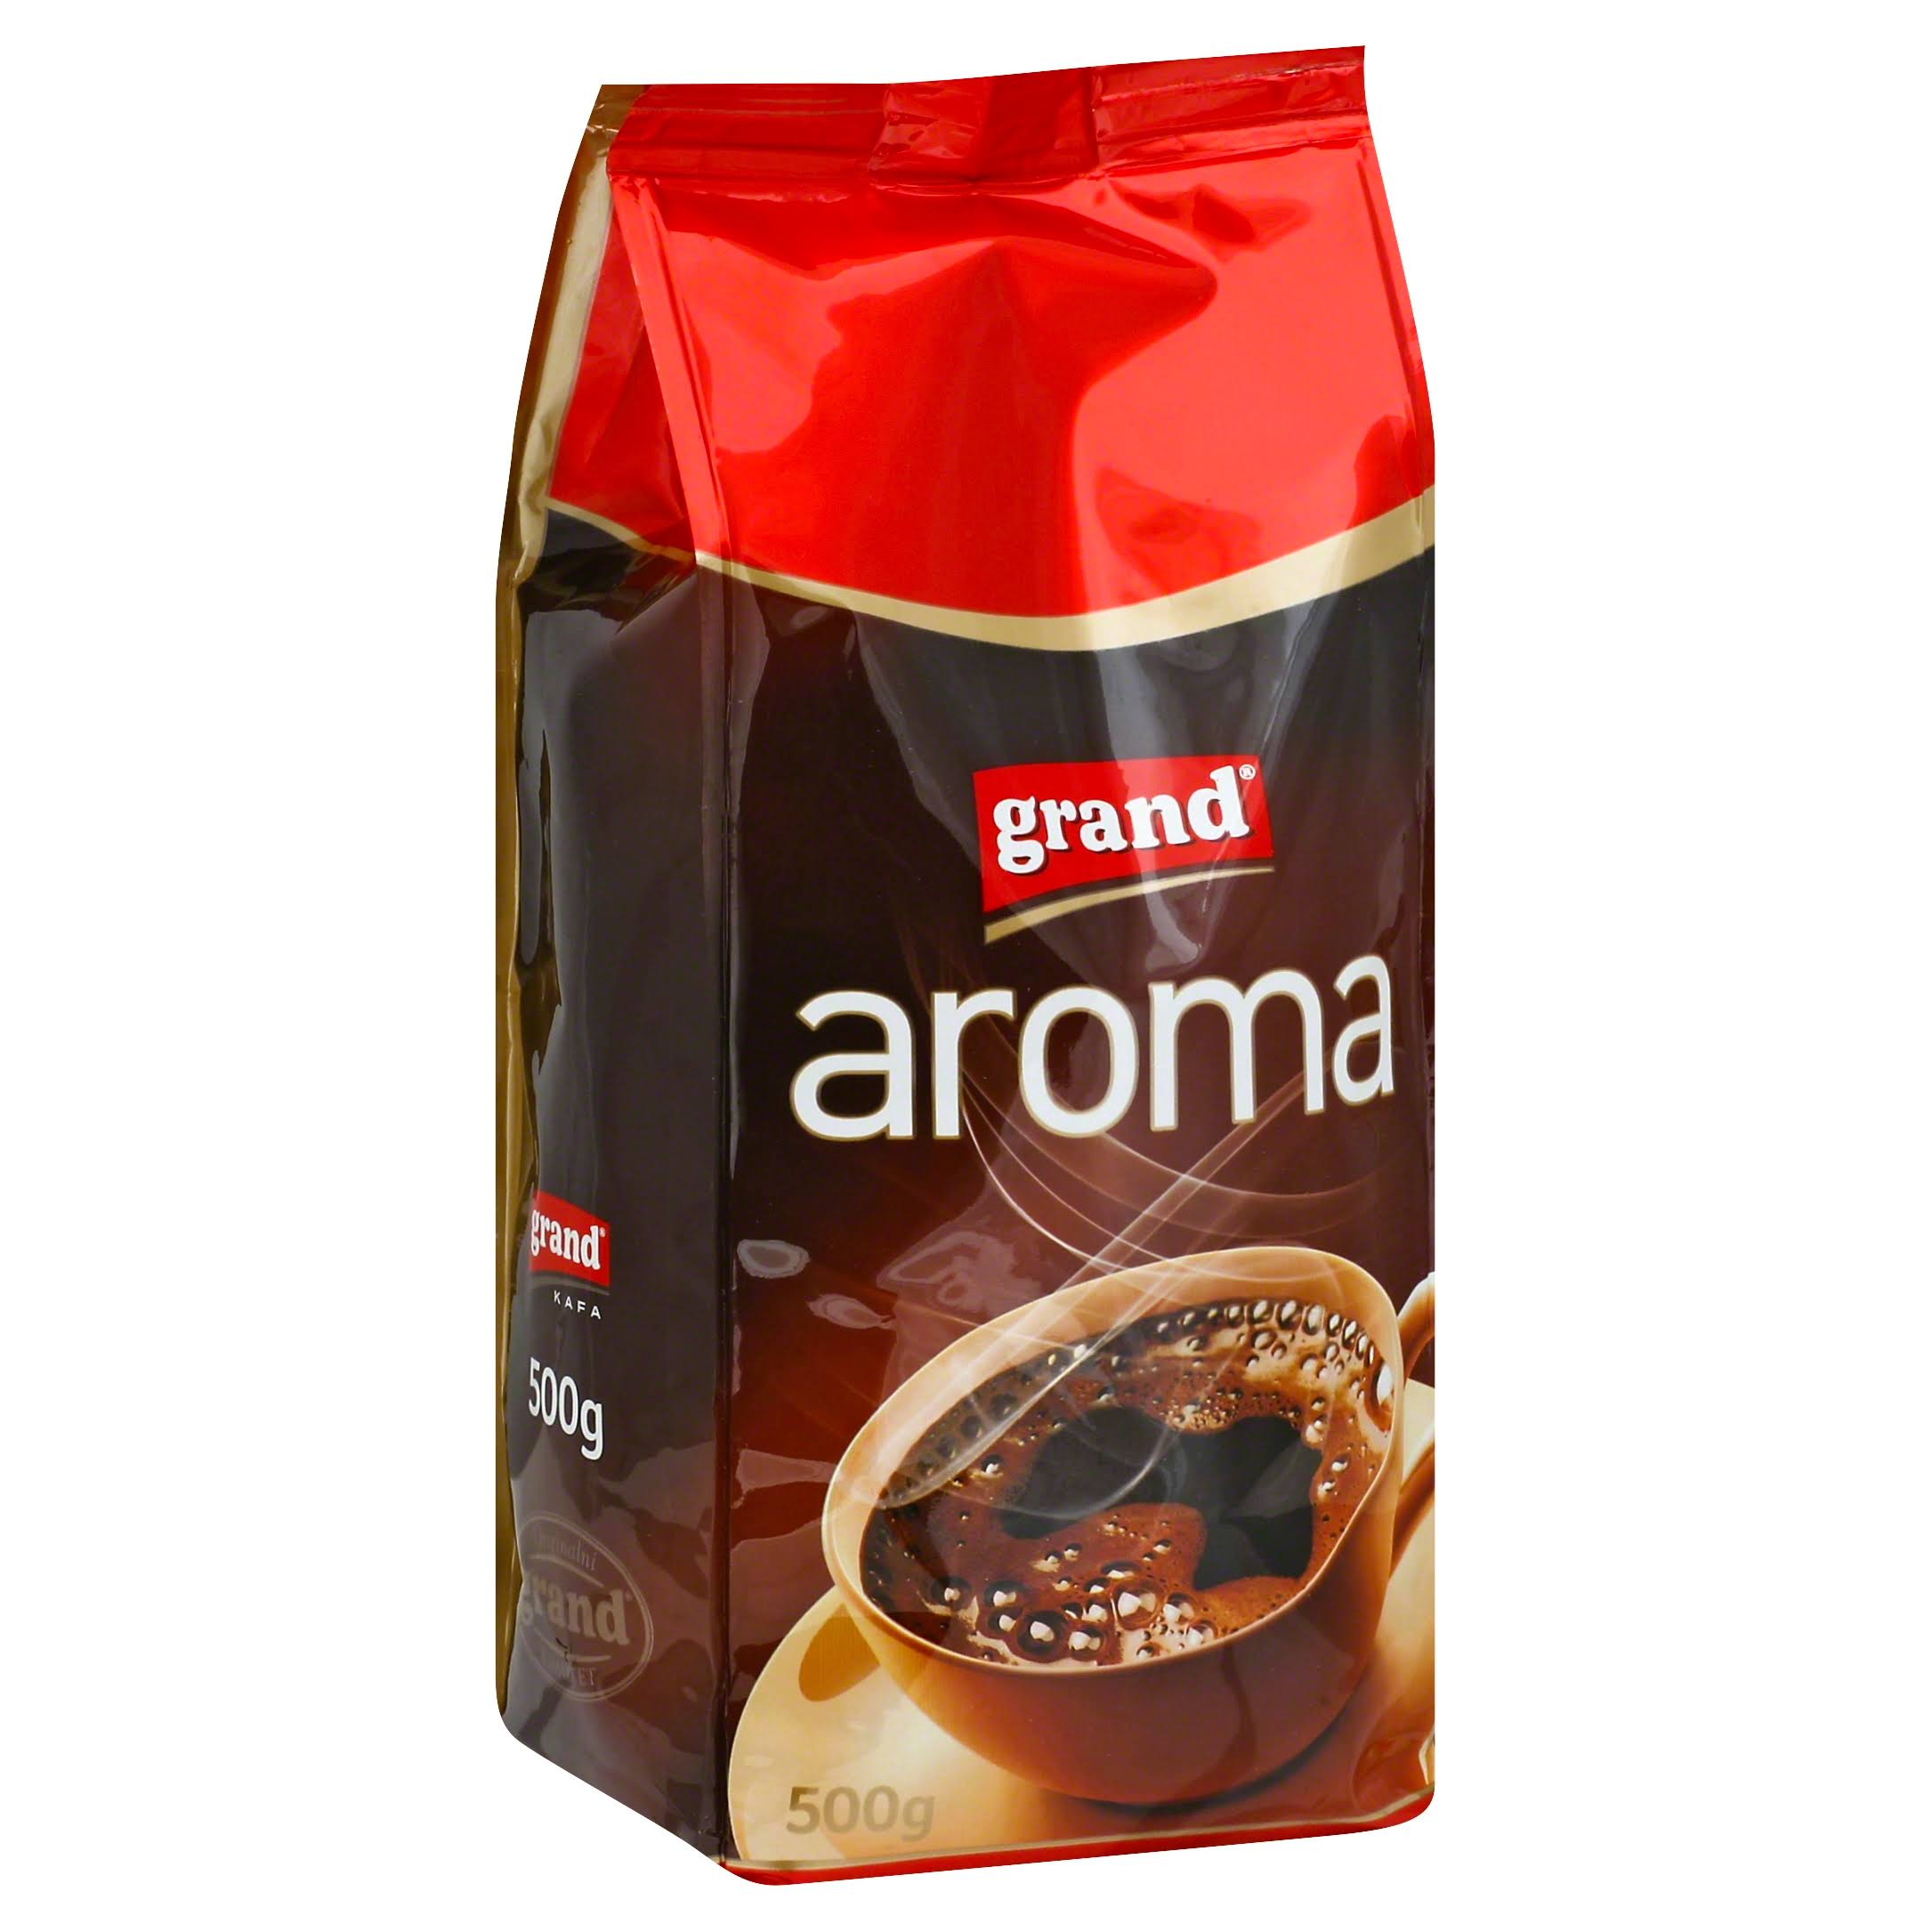 Grand Aroma Ground Coffee - 500g